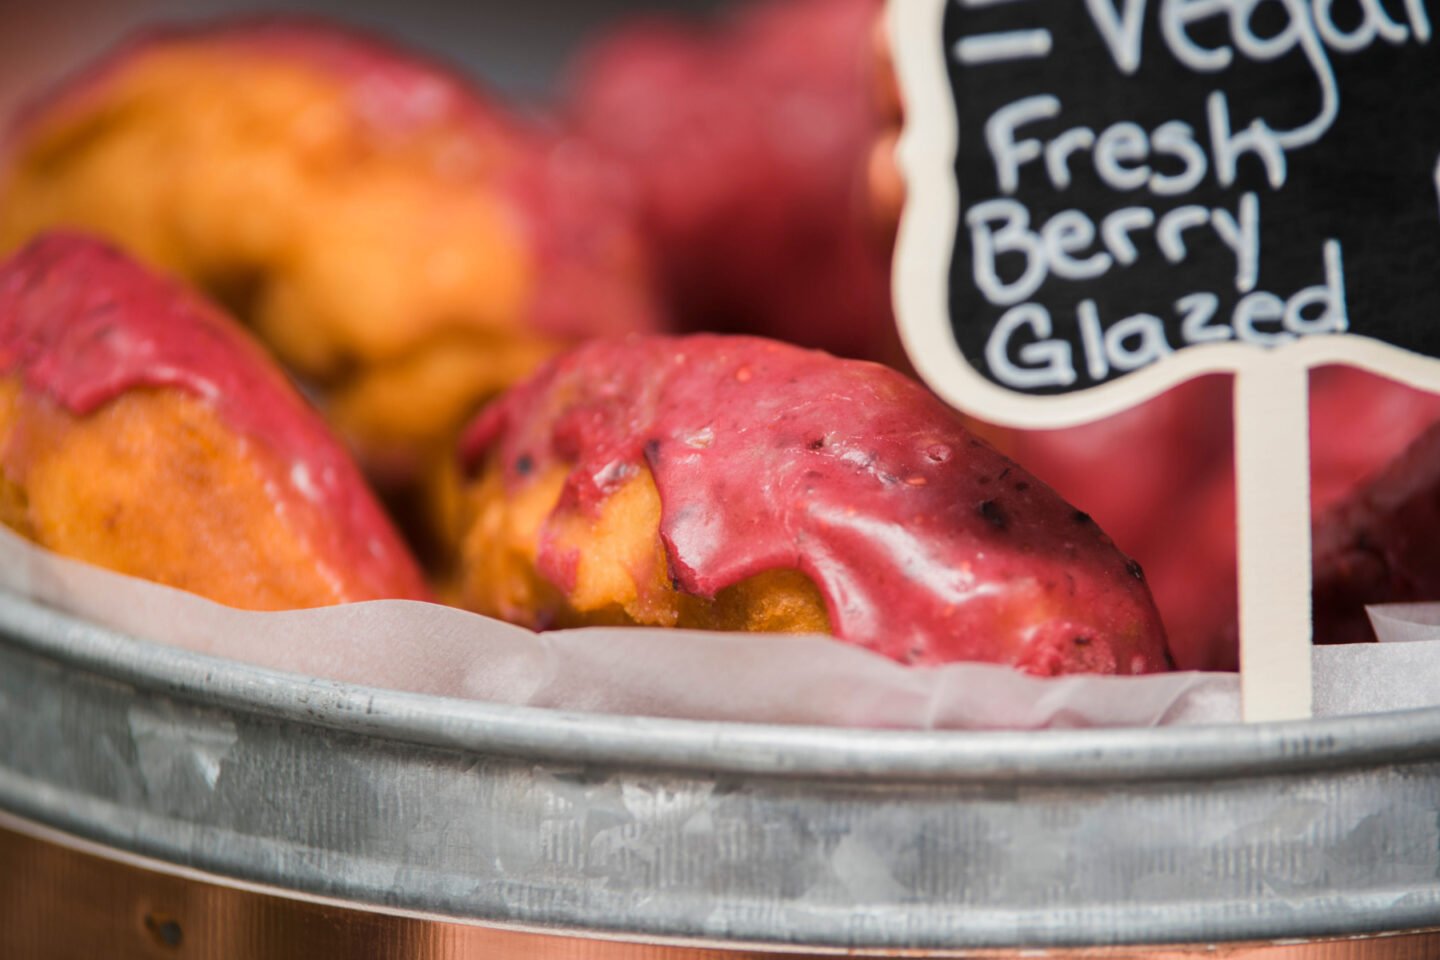 fresh berry glazed vegan donuts